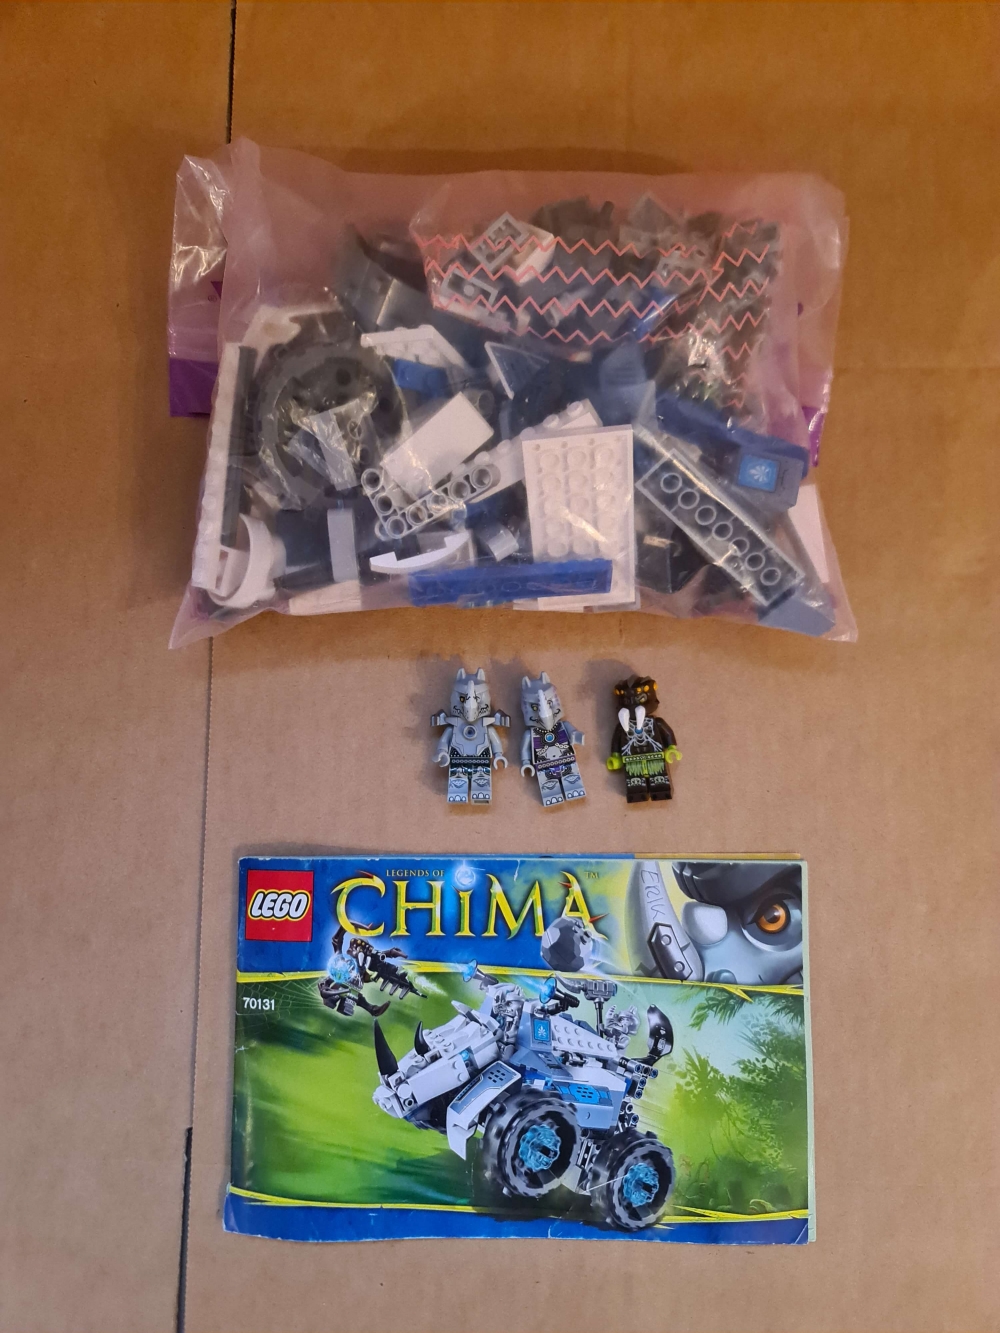 Sett 70131 fra Lego Chima serien. 

Meget pent. Komplett med manual. 